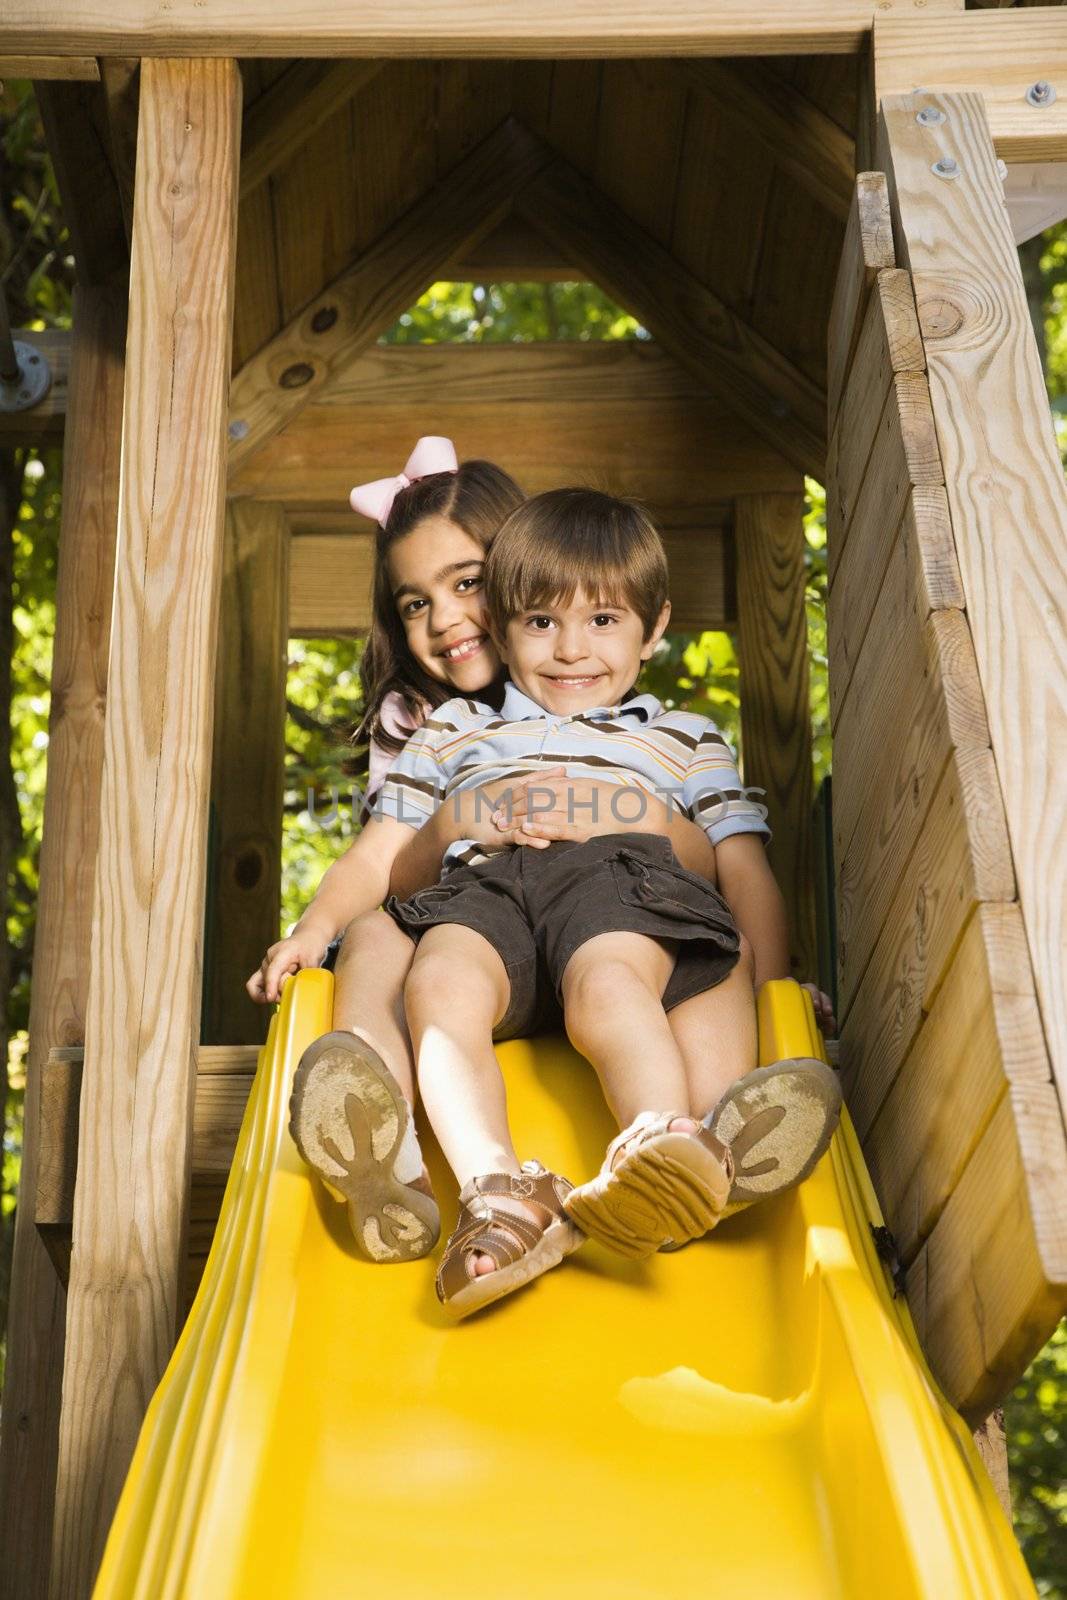 Hispanic girl hugging boy on top of slide smiling at viewer.